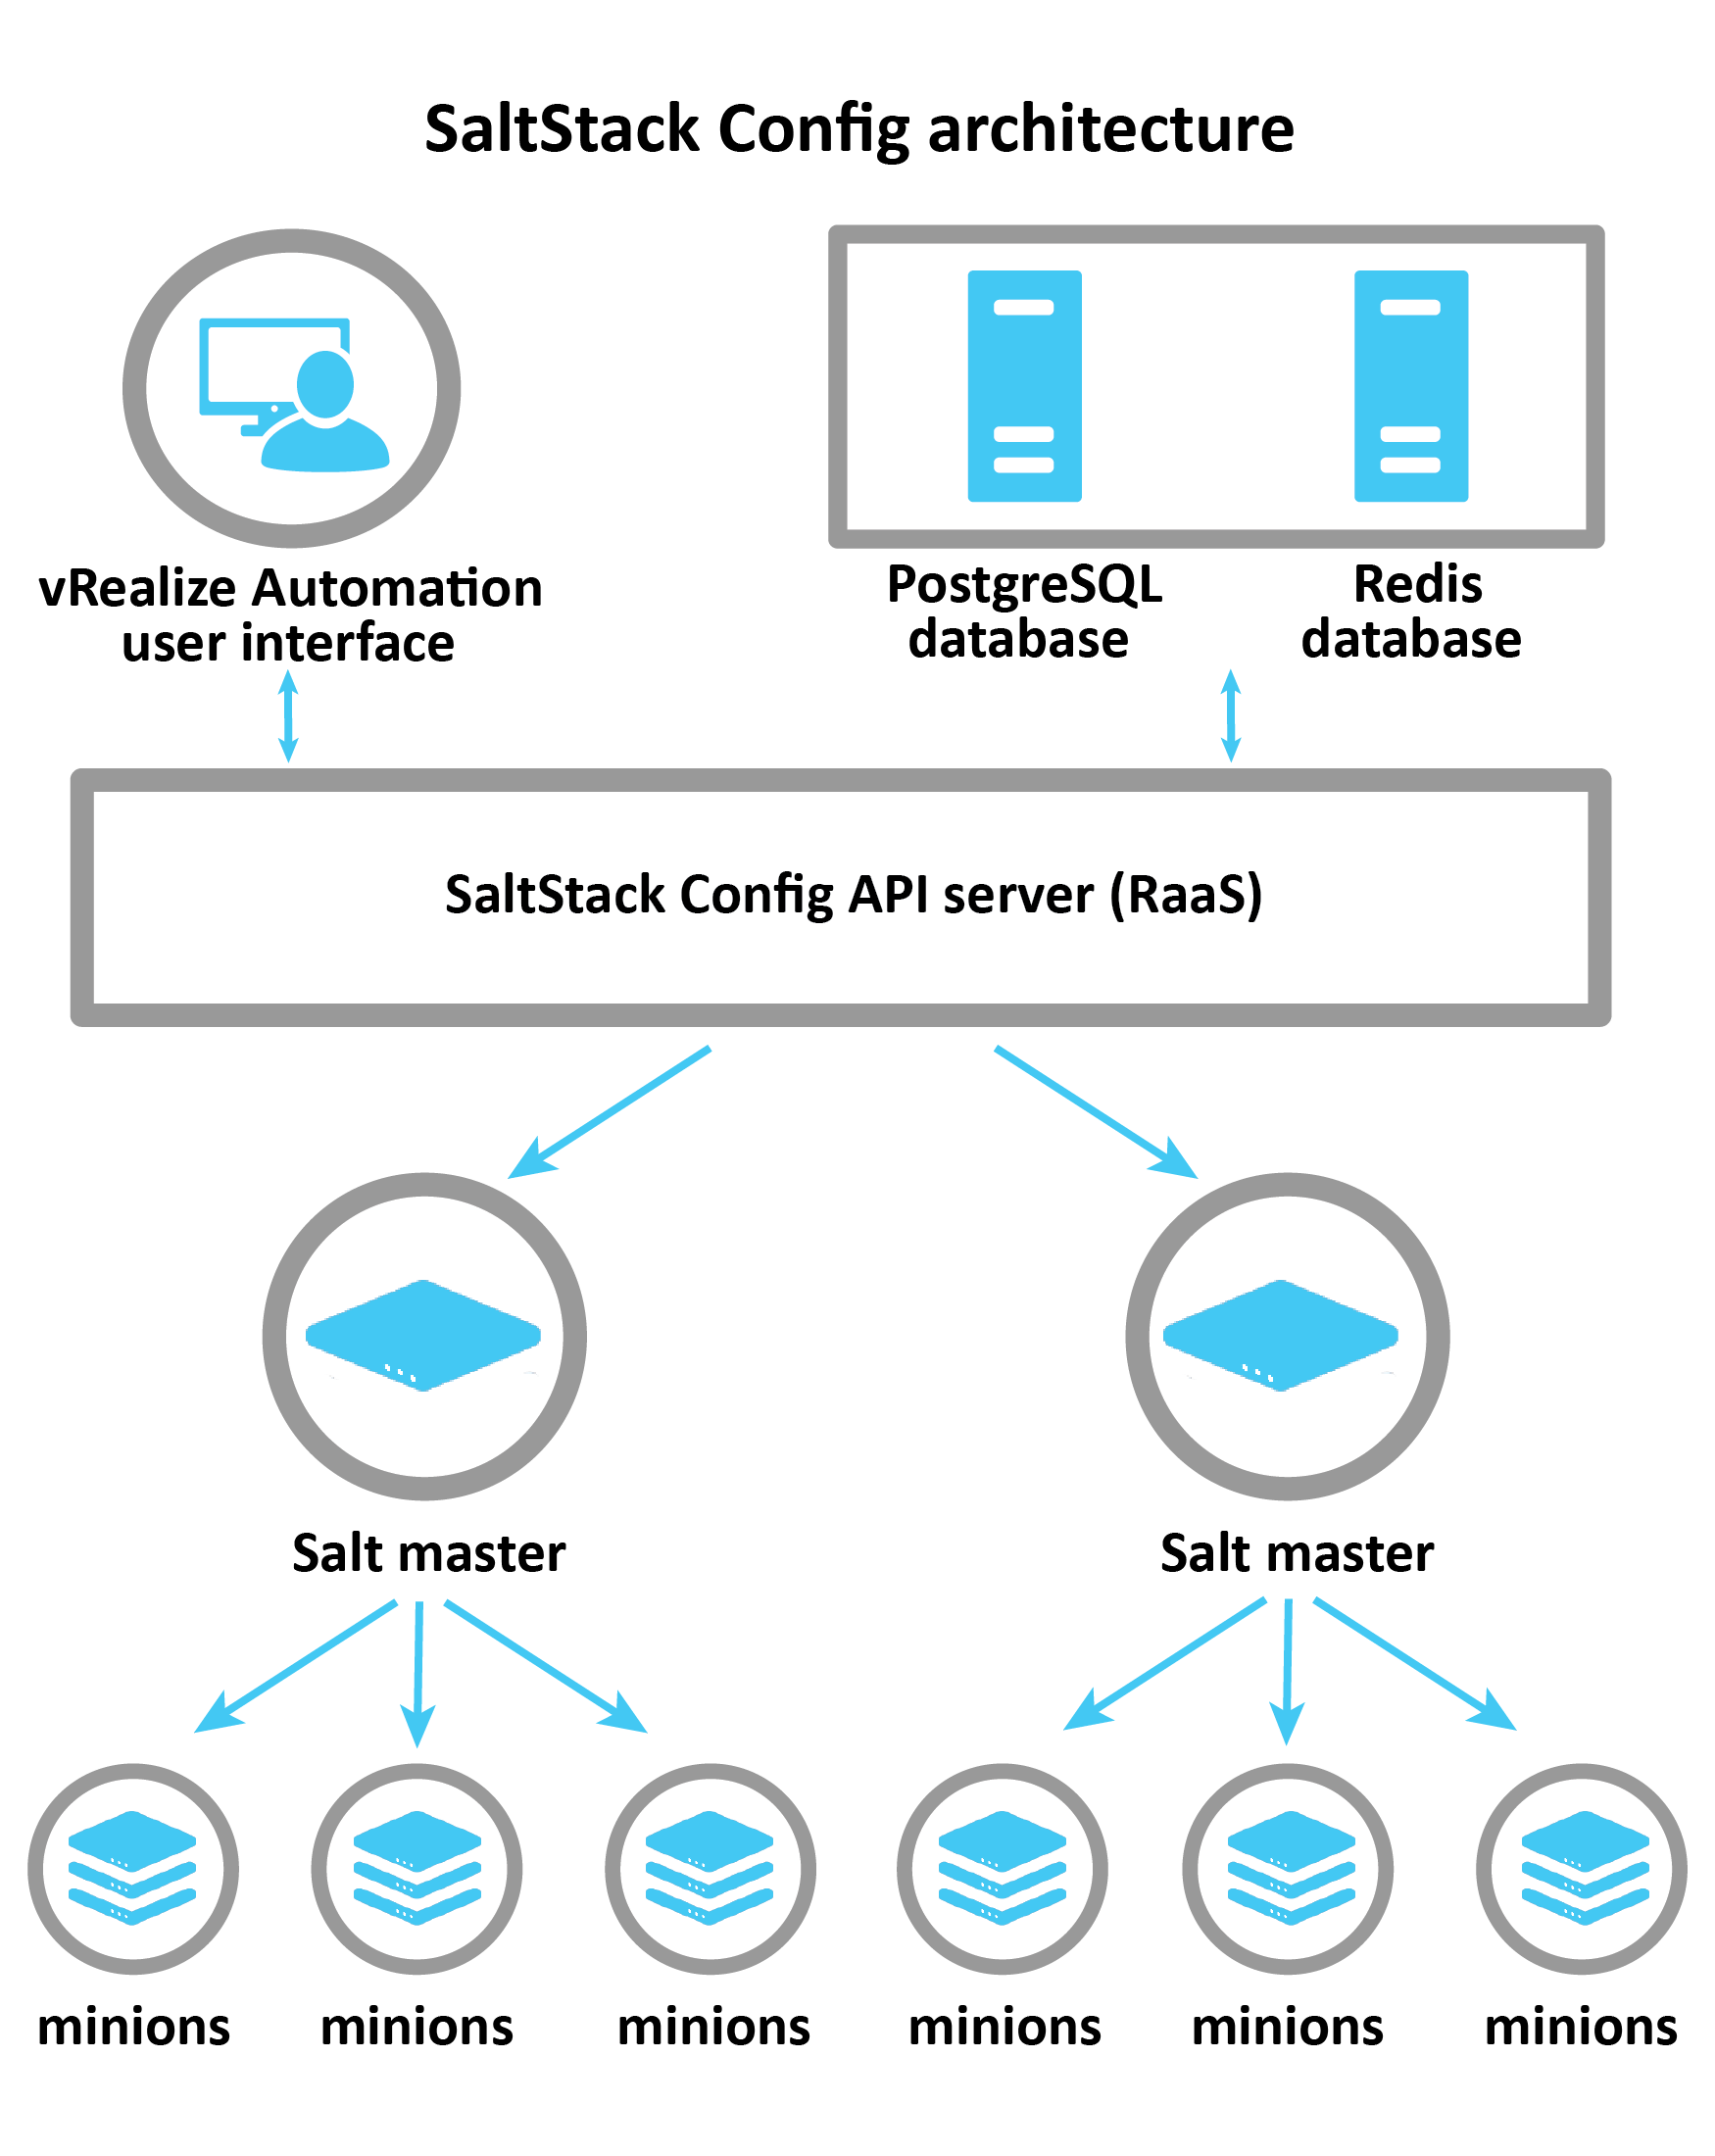 Схема с объяснением архитектуры SaltStack Config: vRA, Postgress и Redis подключаются к серверу RaaS, который управляет главными серверами Salt. Затем главные серверы Salt передает информацию на конкретные служебные серверы.